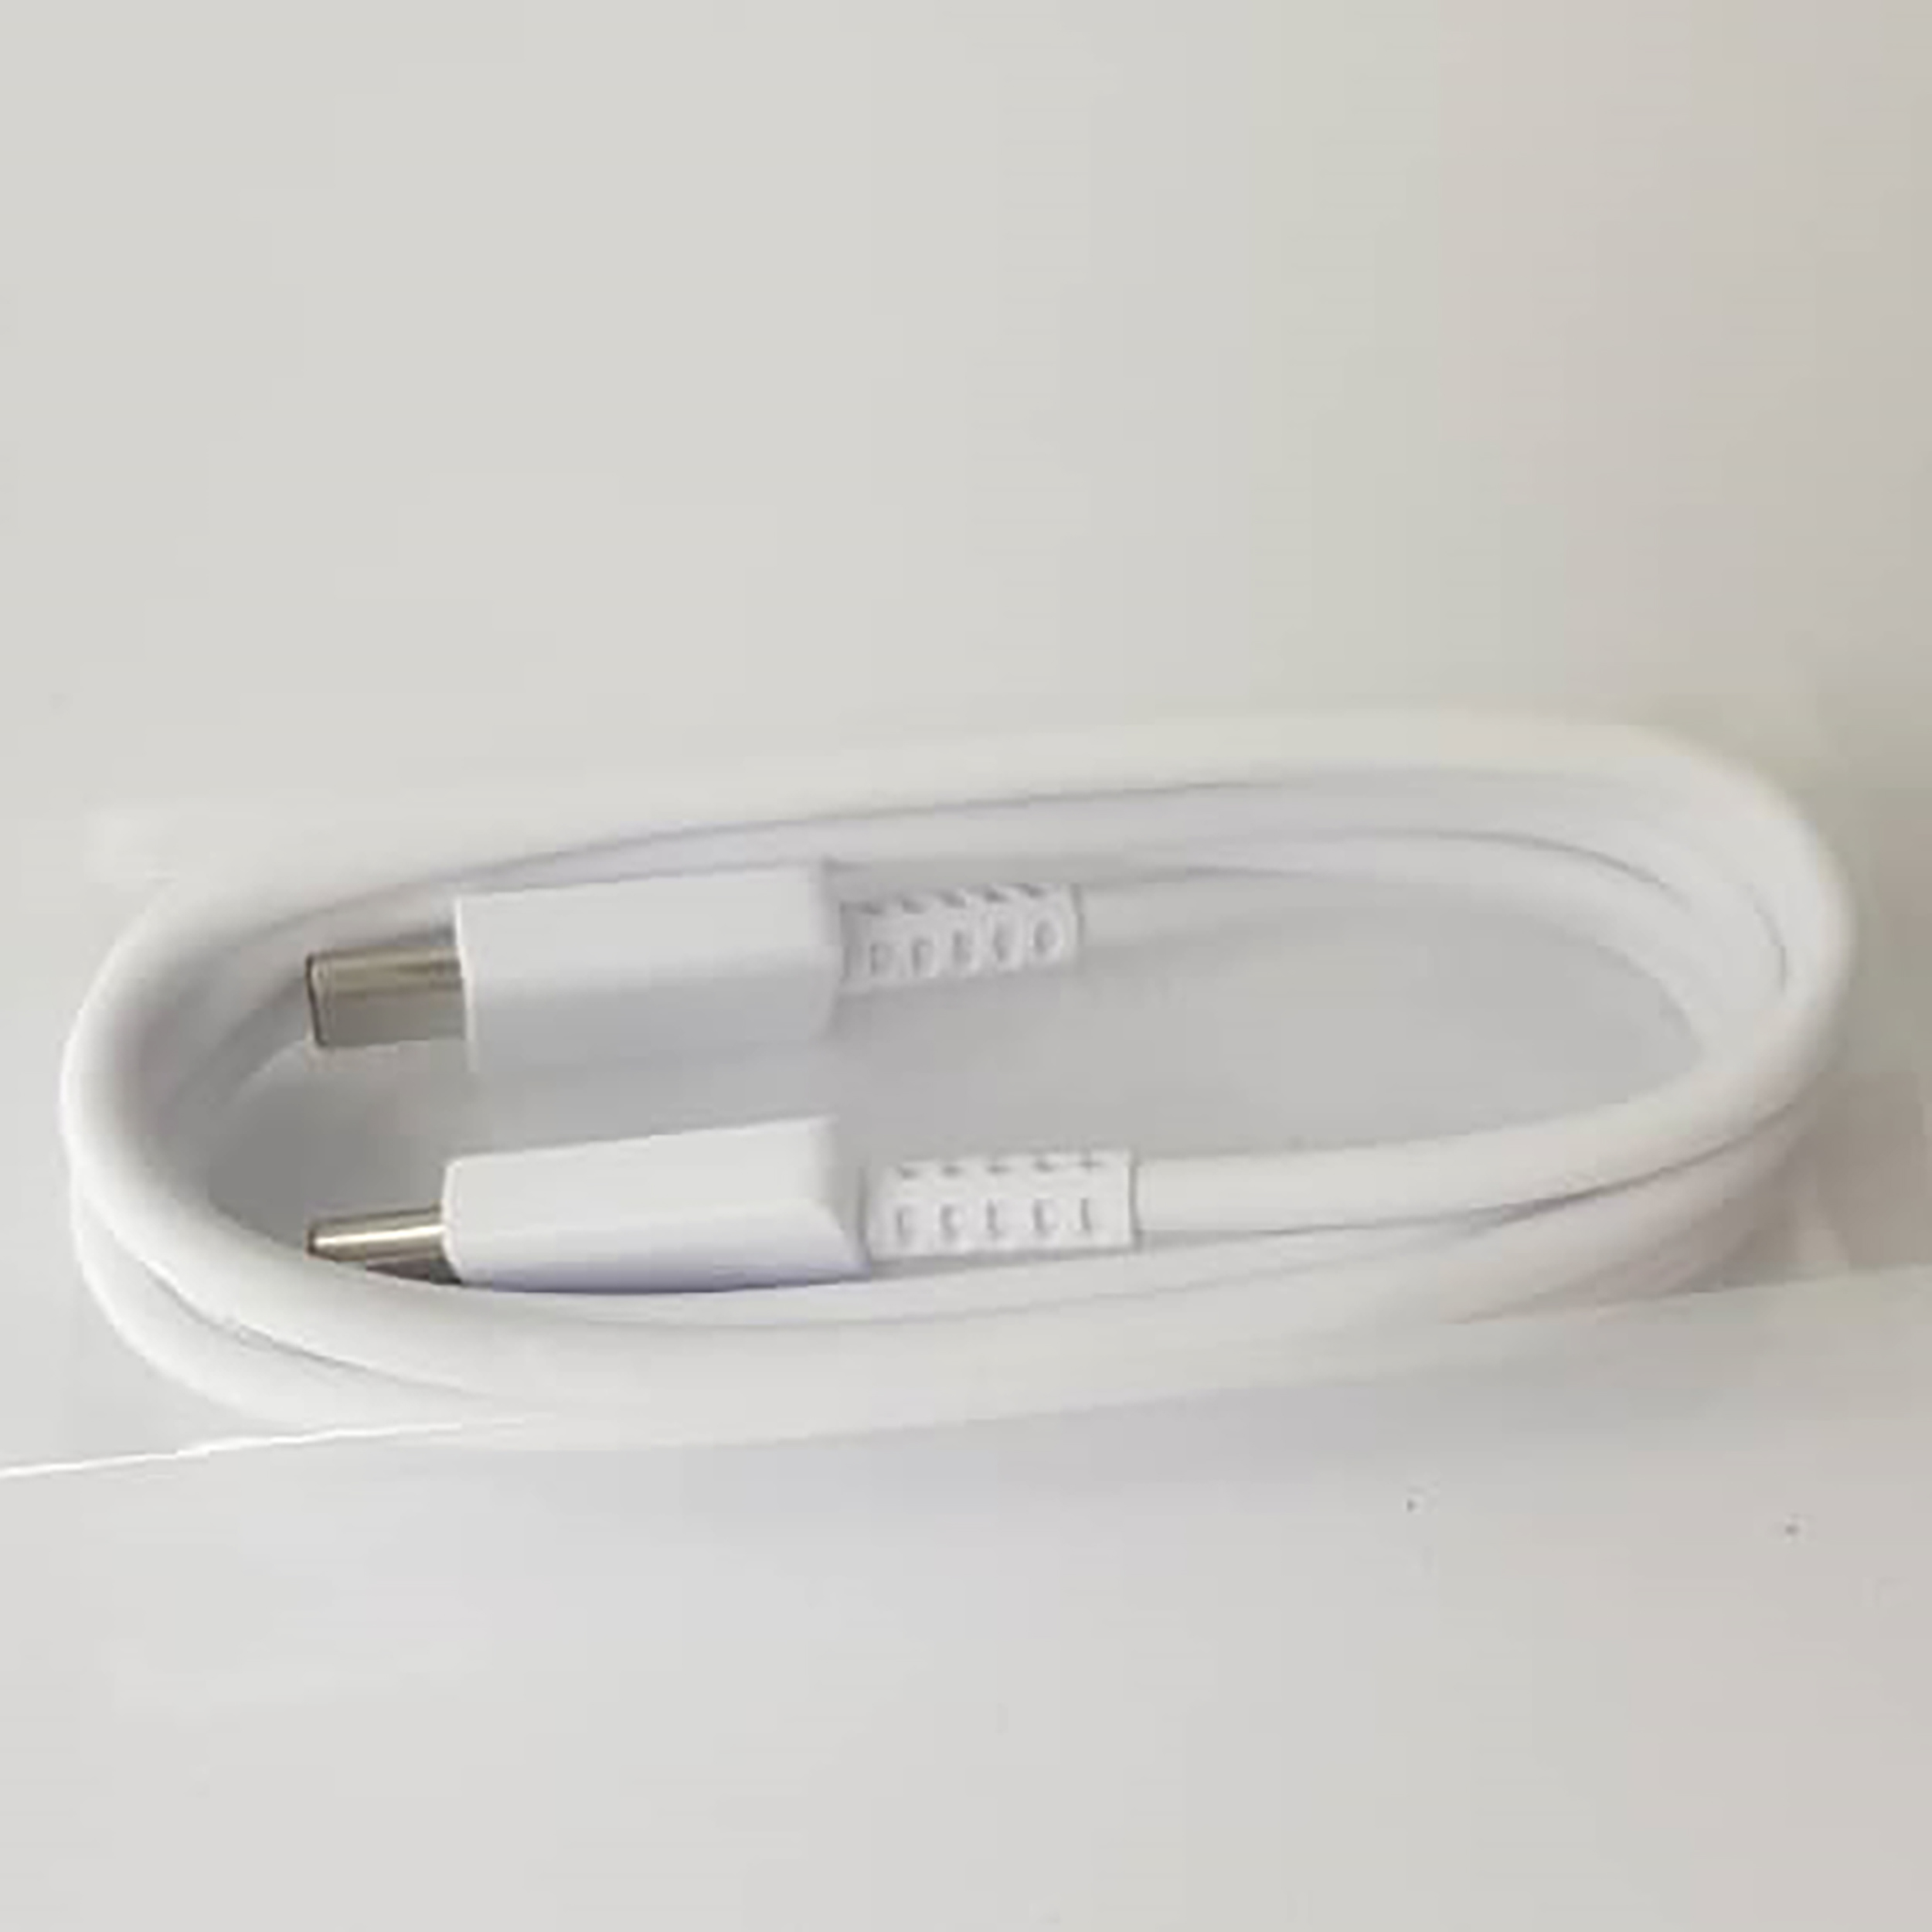 شارژر دیواری سامسونگ مدل EP-TA800 به همراه کابل تبدیل USB-C